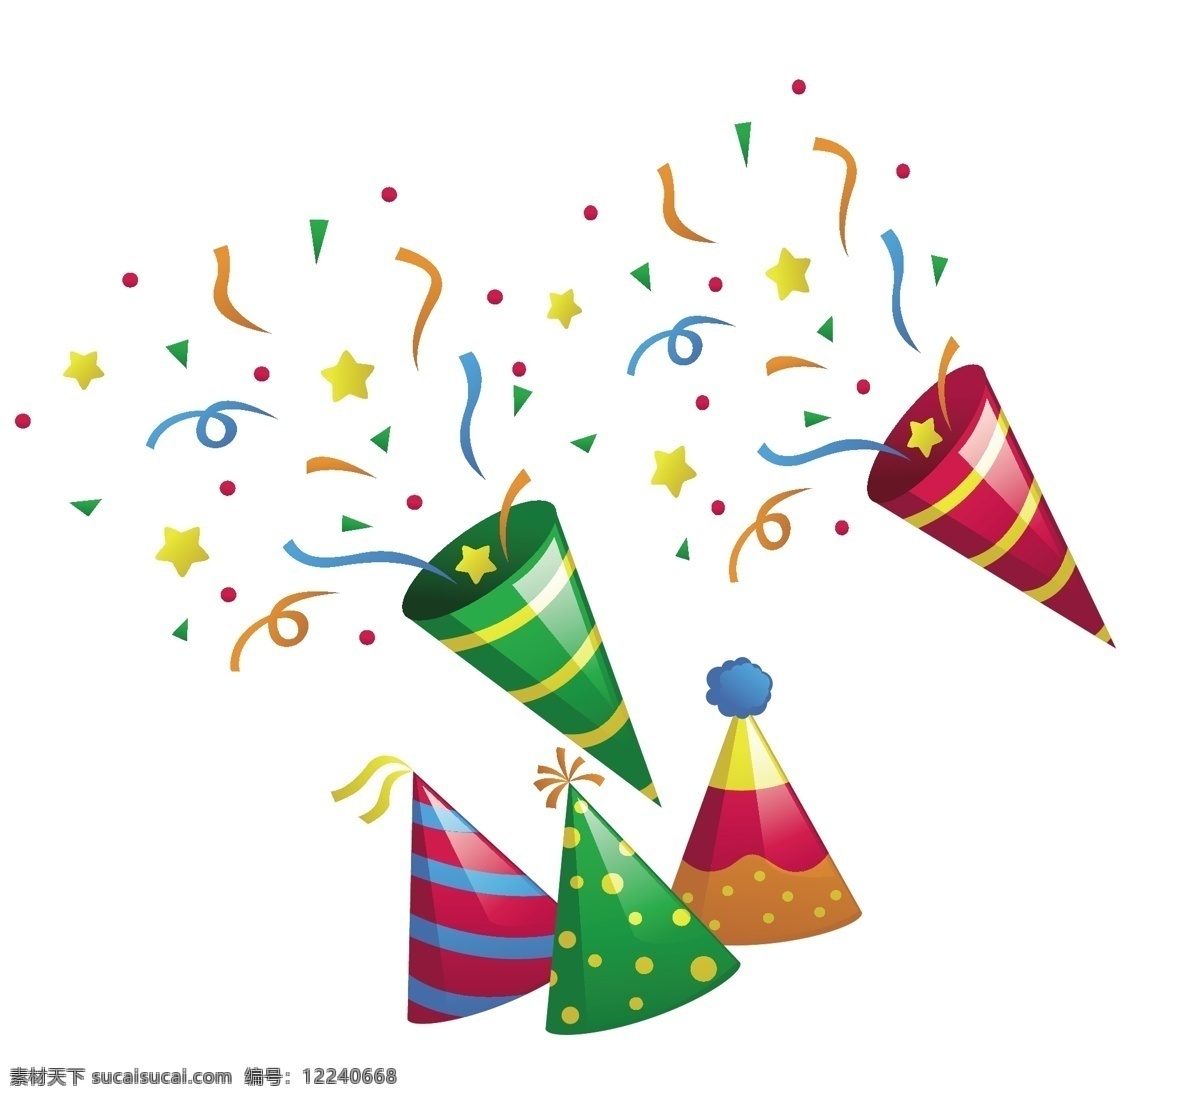 矢量 生日 烟花 精美 节日庆典 元素 eps格式 卡通背景 拉花 气球 庆祝 生日快乐 生日主题